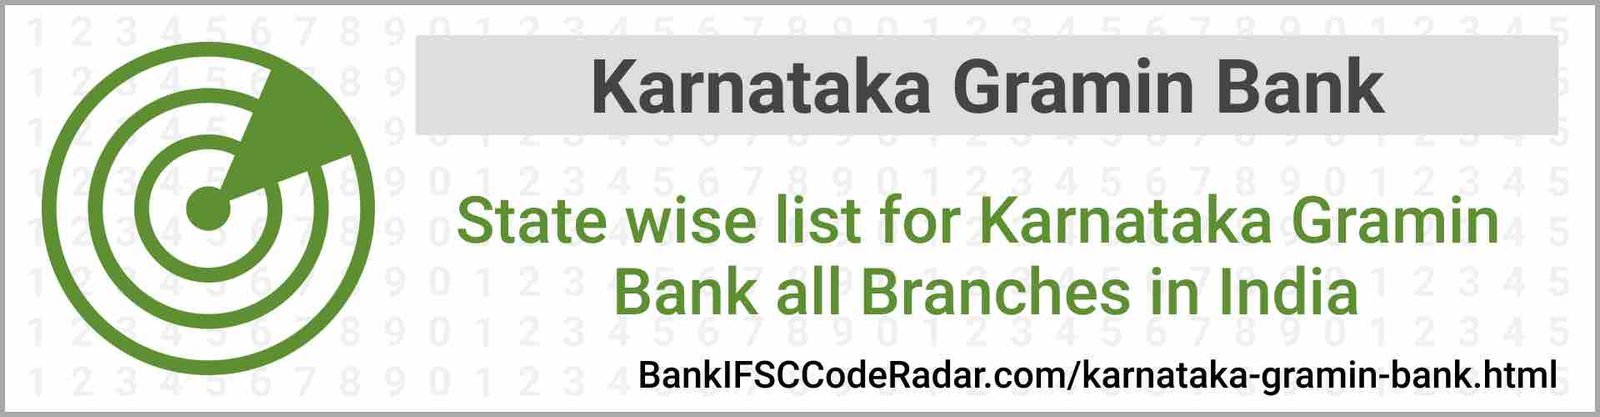 Karnataka Gramin Bank All Branches India